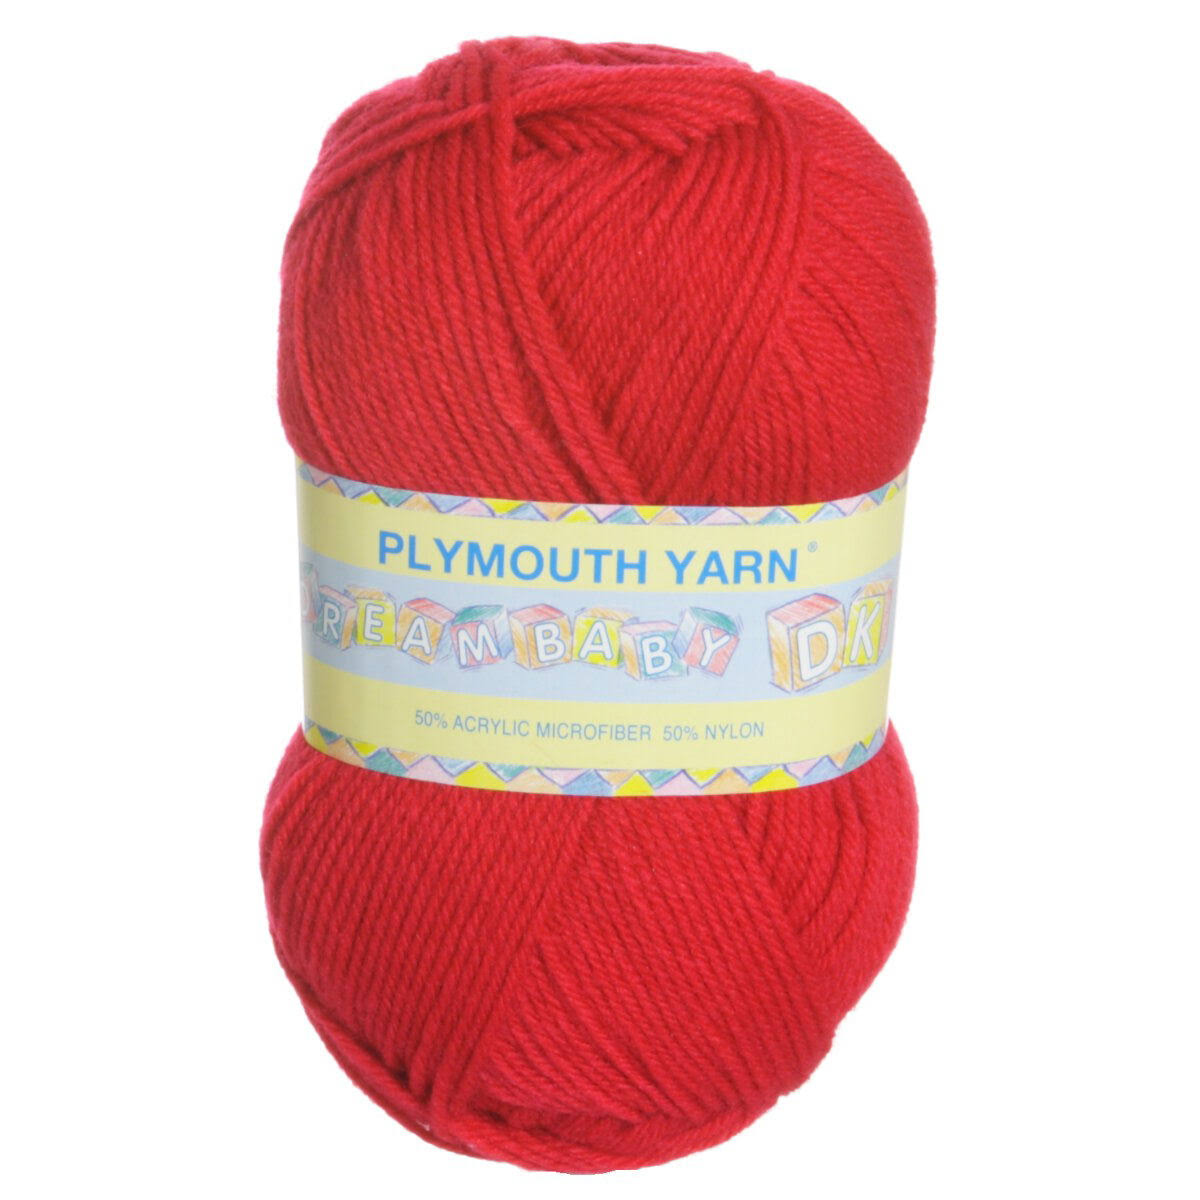 Plymouth Yarn Dreambaby Dk Yarn - 139 Raspberry